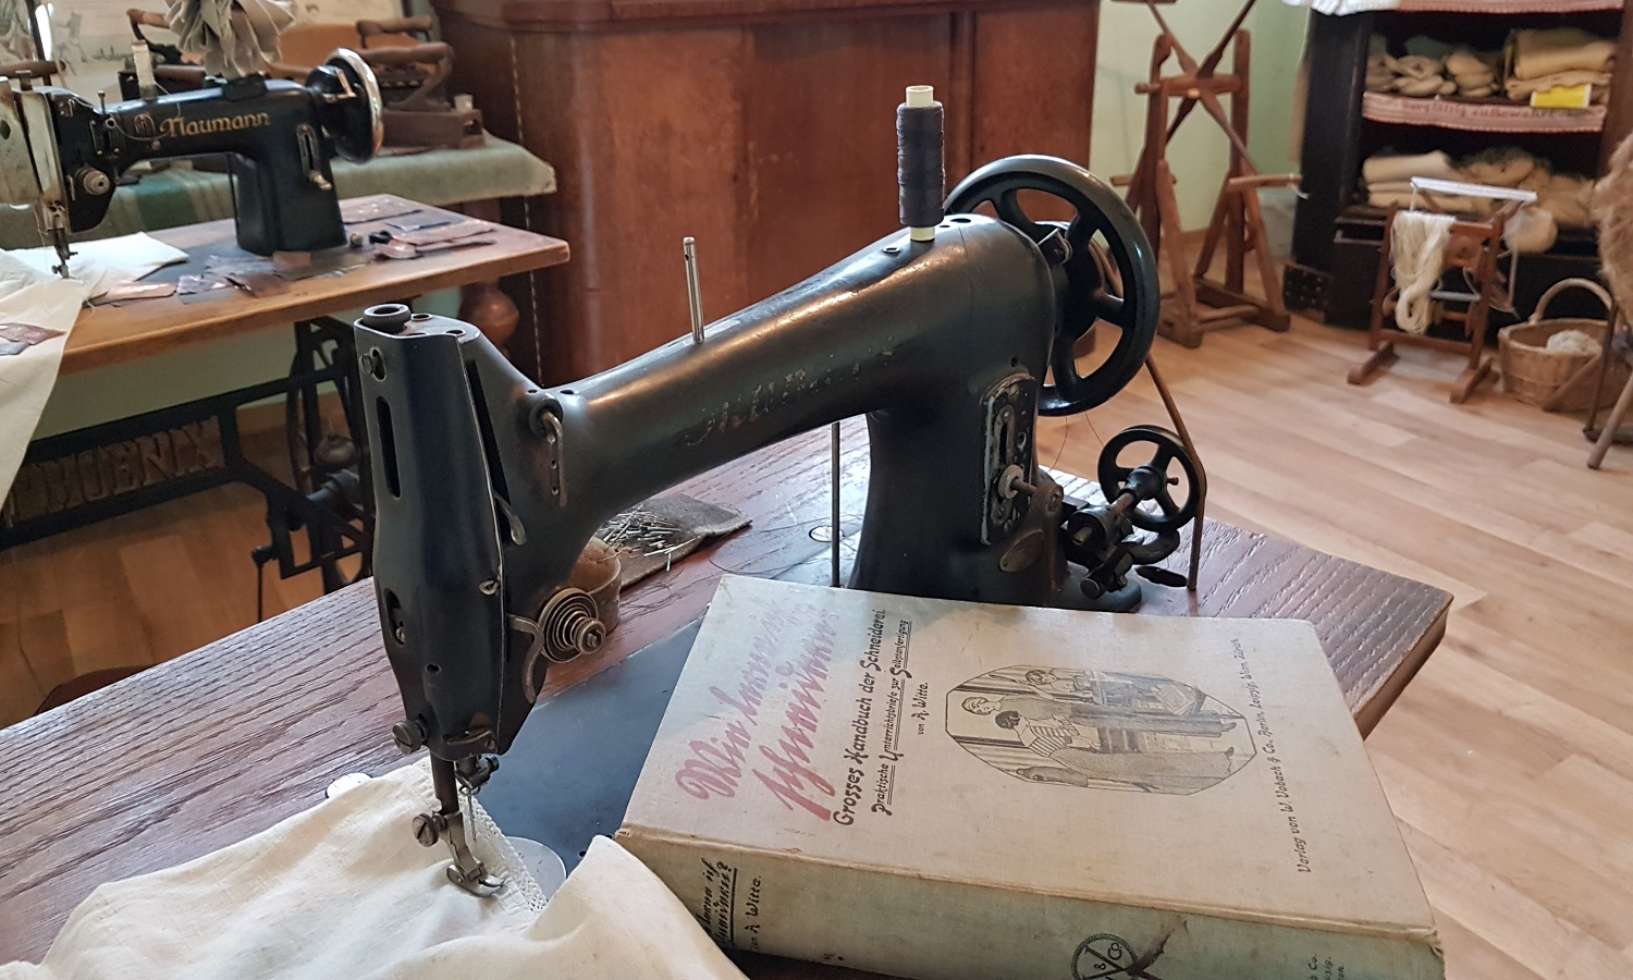 Alte Nähmaschinen, Spinnräder, Leinenkleidung, Stickereien - im Störtalmuseum Banzkow werden alte Handarbeitstechniken wieder lebendig.